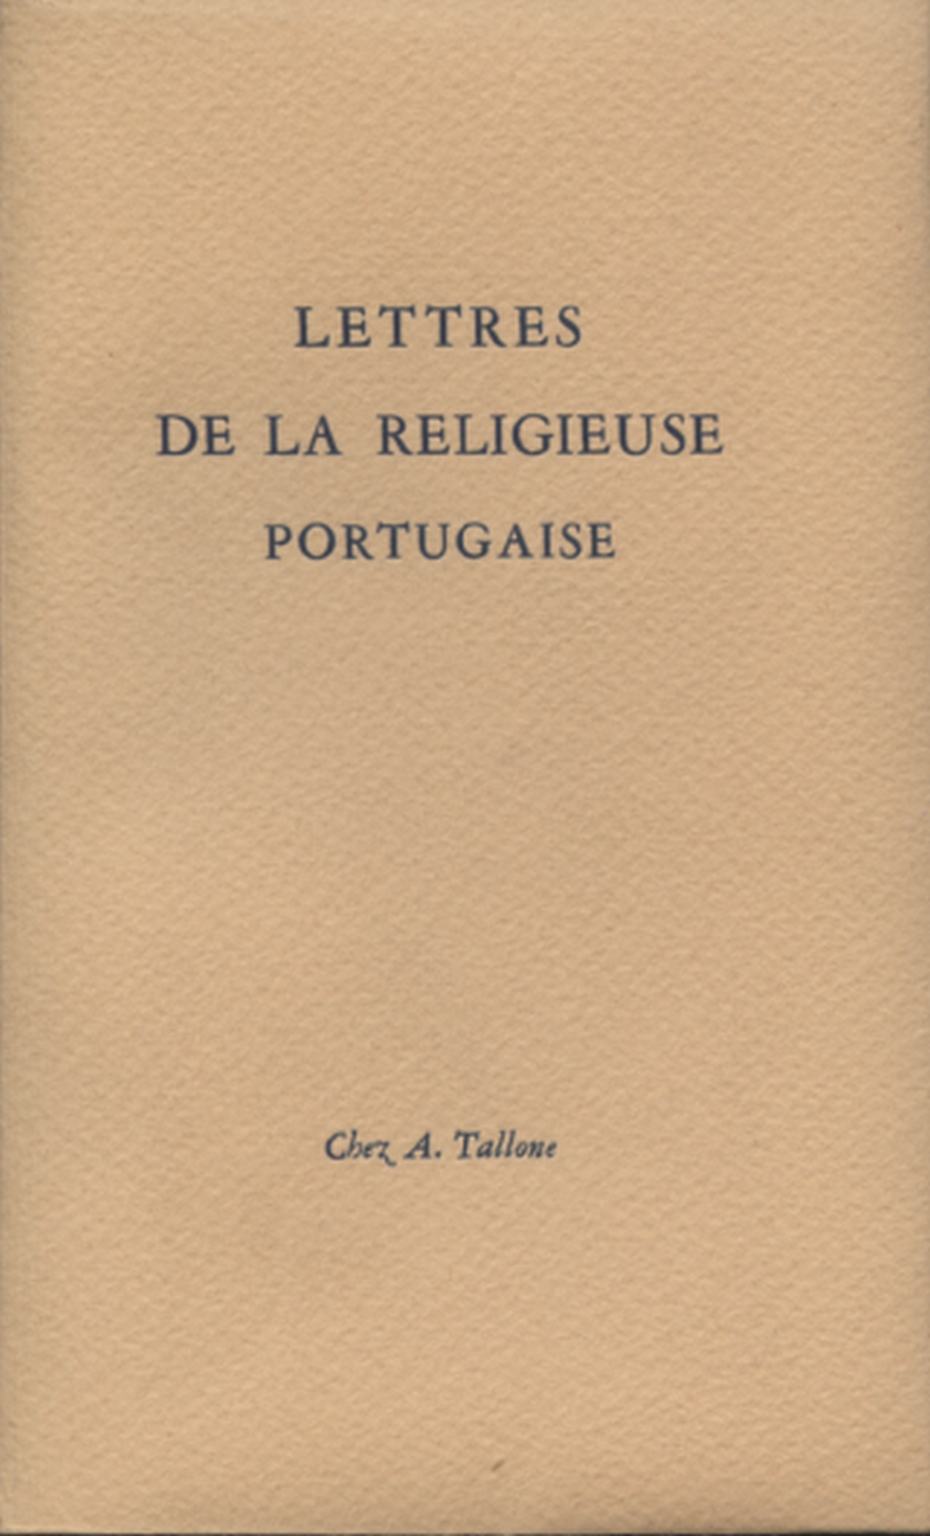 Lettres de la religieuse portugaise, s.un.